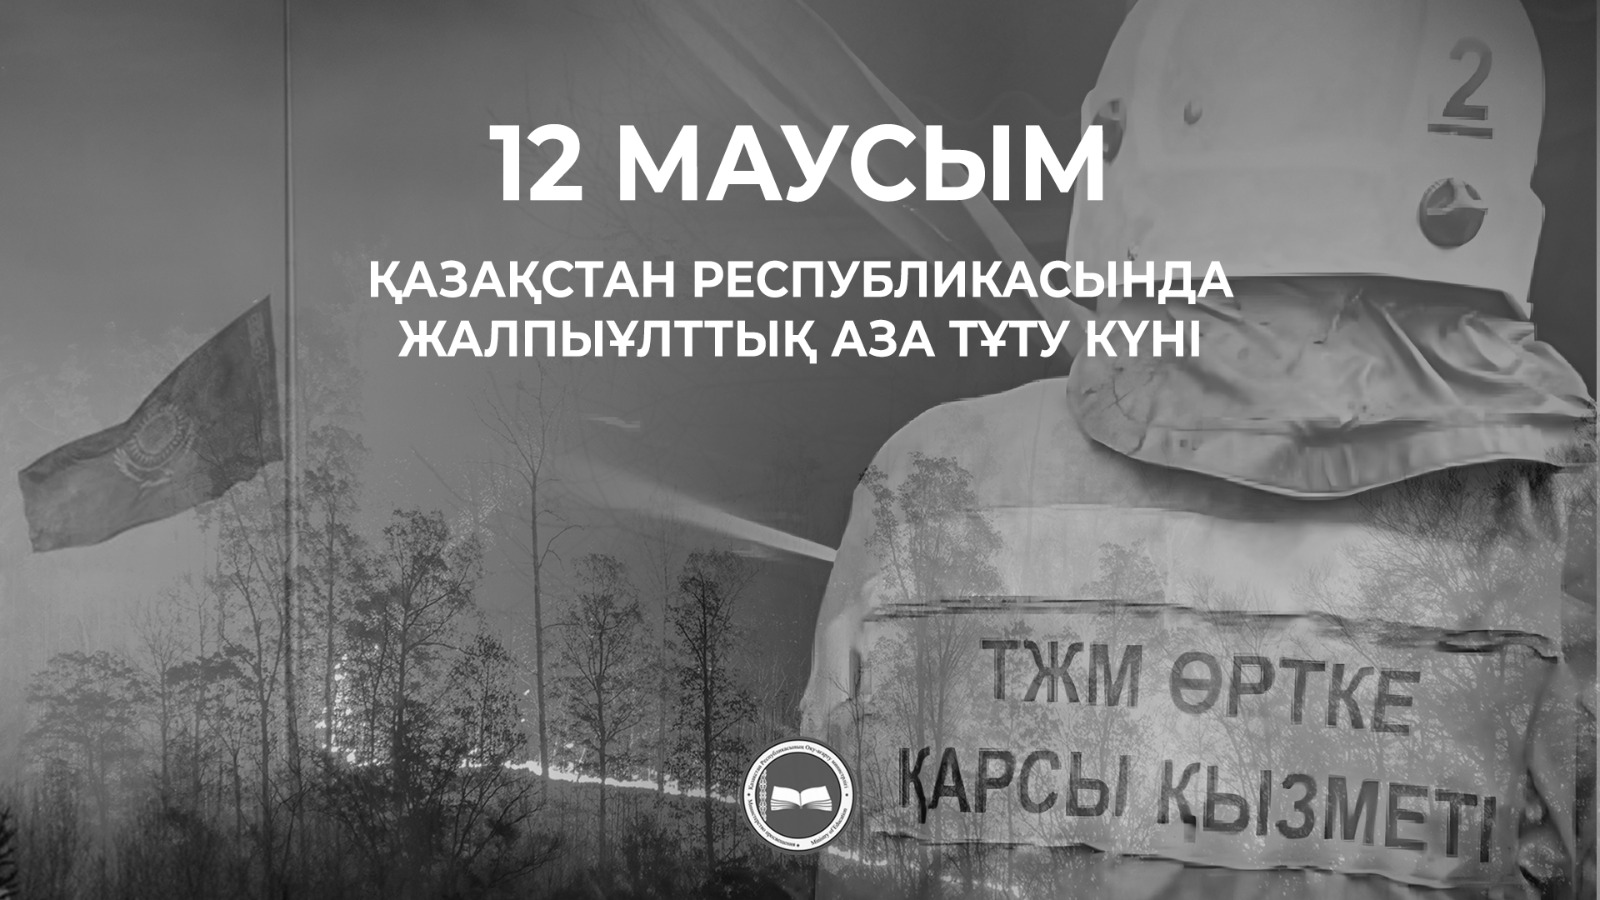 День общенационального траура в Казахстане